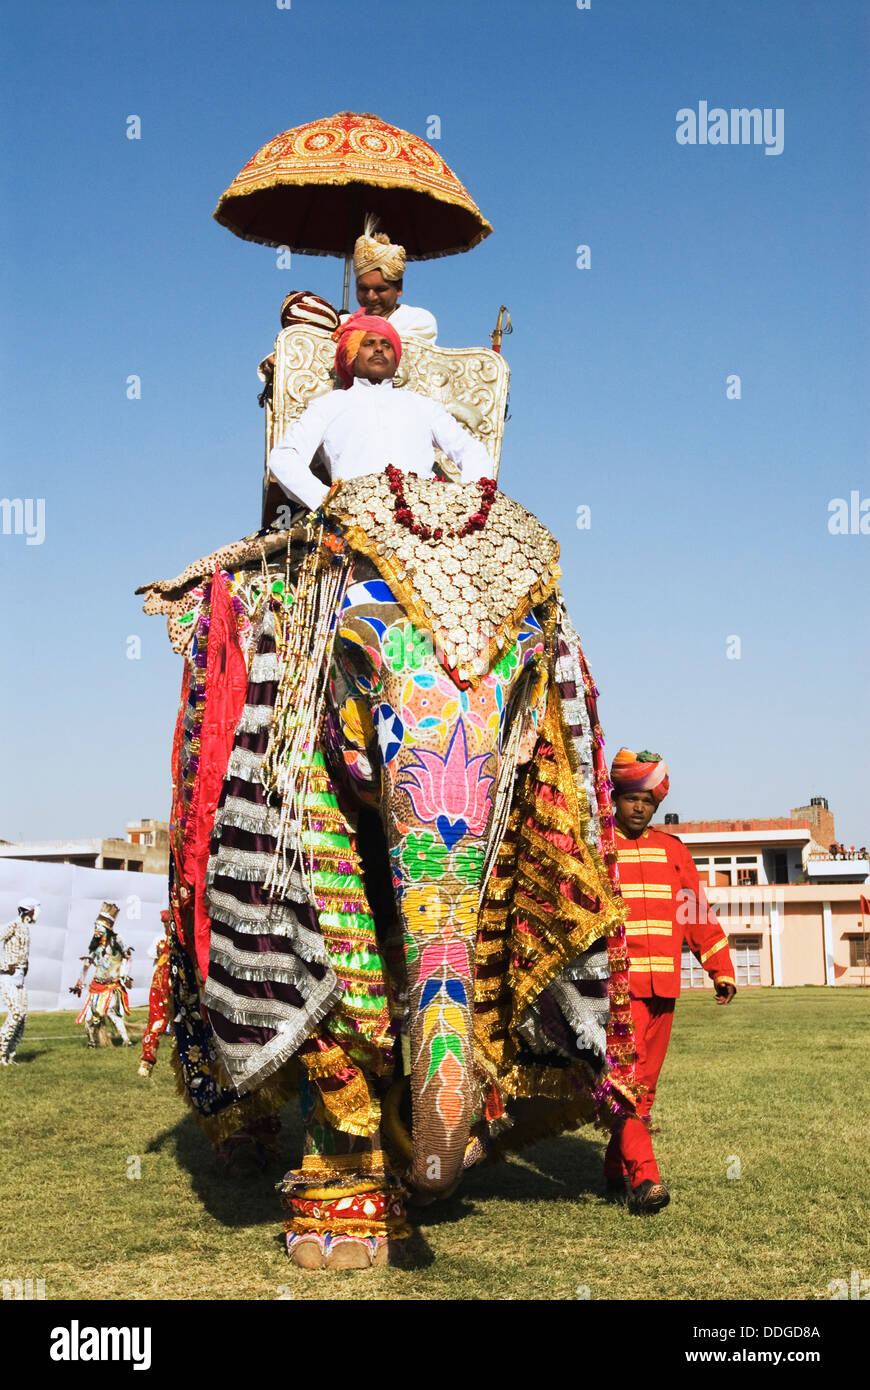 L'homme en robe royale traditionnelle du Rajasthan sur un éléphant, Elephant Festival, Jaipur, Rajasthan, Inde Banque D'Images